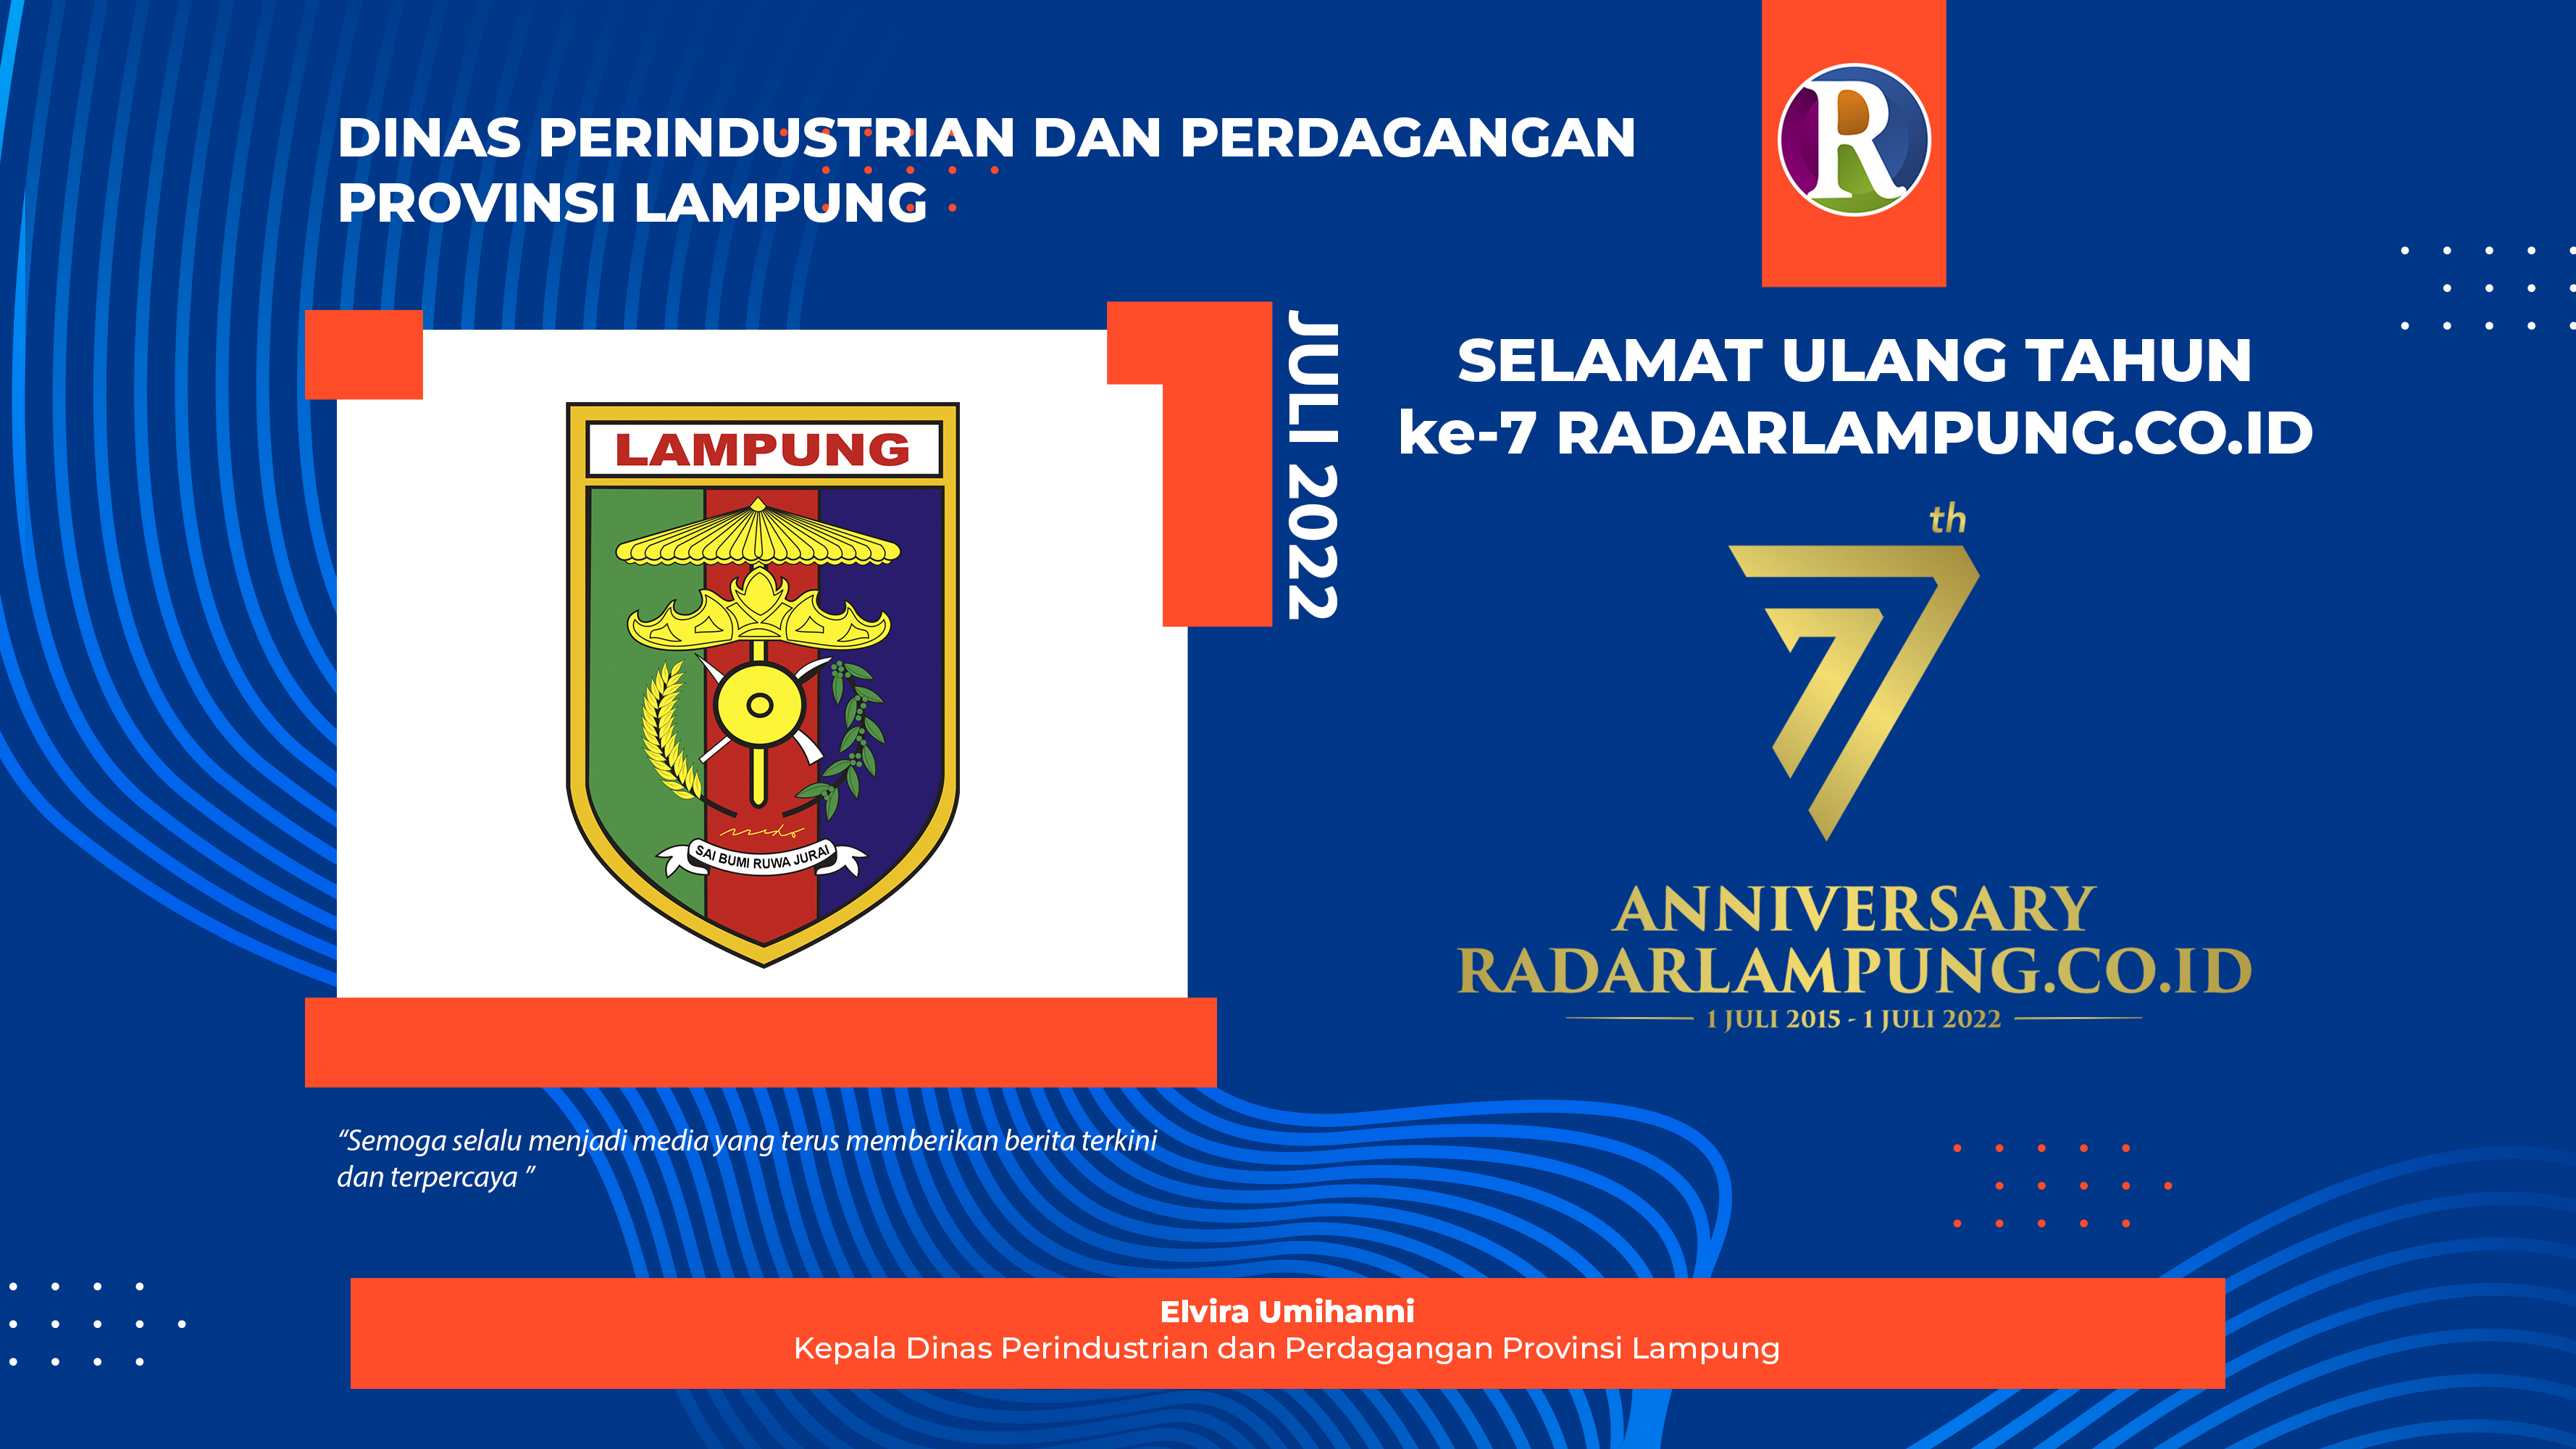 Disperindag Provinsi Lampung: Selamat Hari Jadi ke-7 Radarlampung.co.id